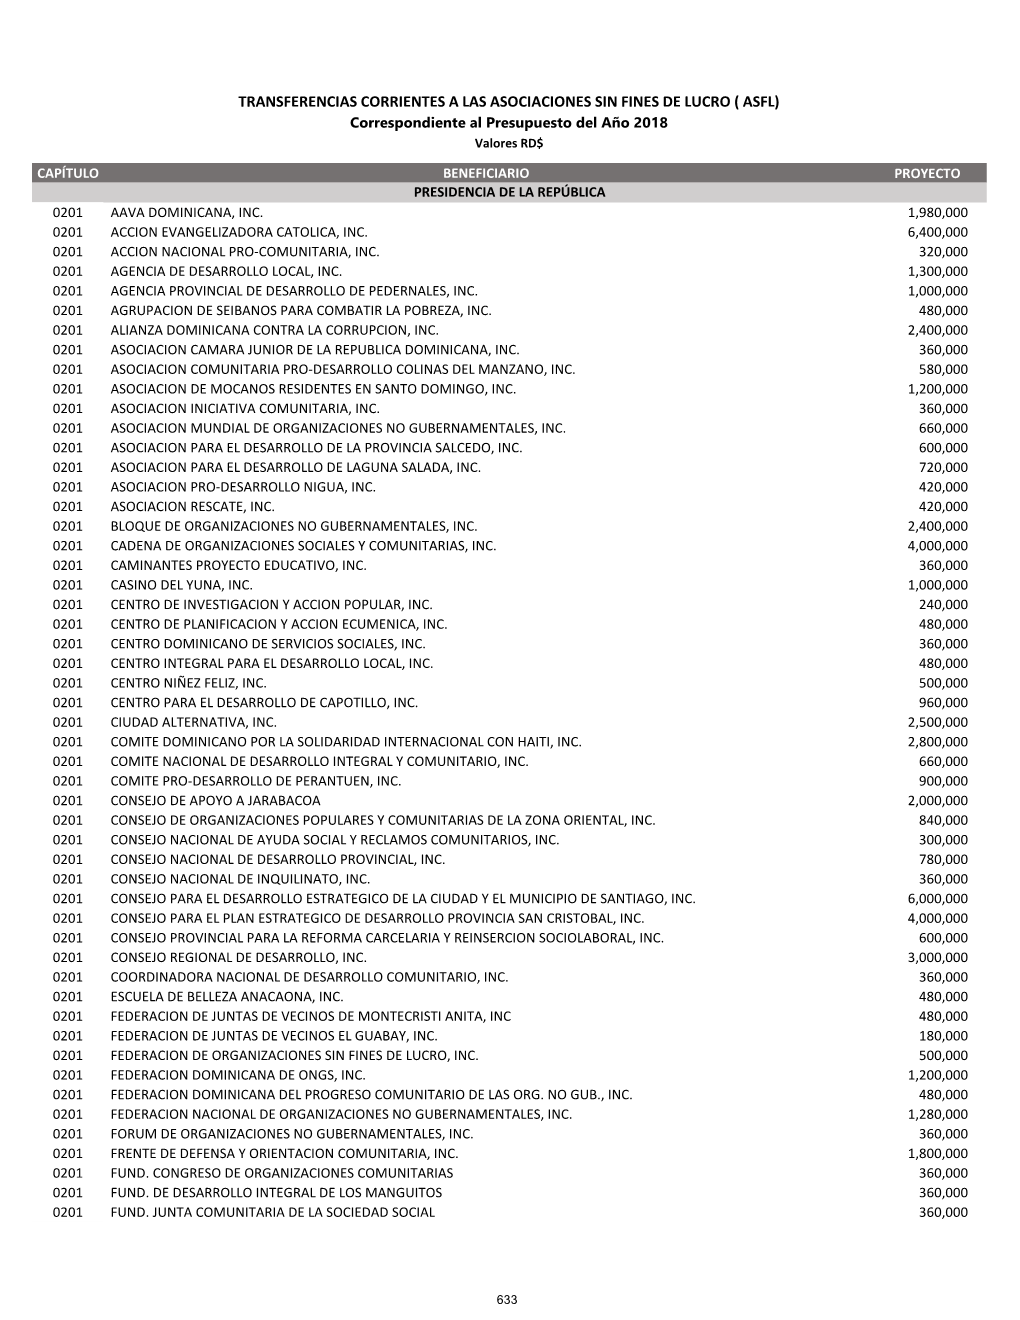 TRANSFERENCIAS CORRIENTES a LAS ASOCIACIONES SIN FINES DE LUCRO ( ASFL) Correspondiente Al Presupuesto Del Año 2018 Valores RD$